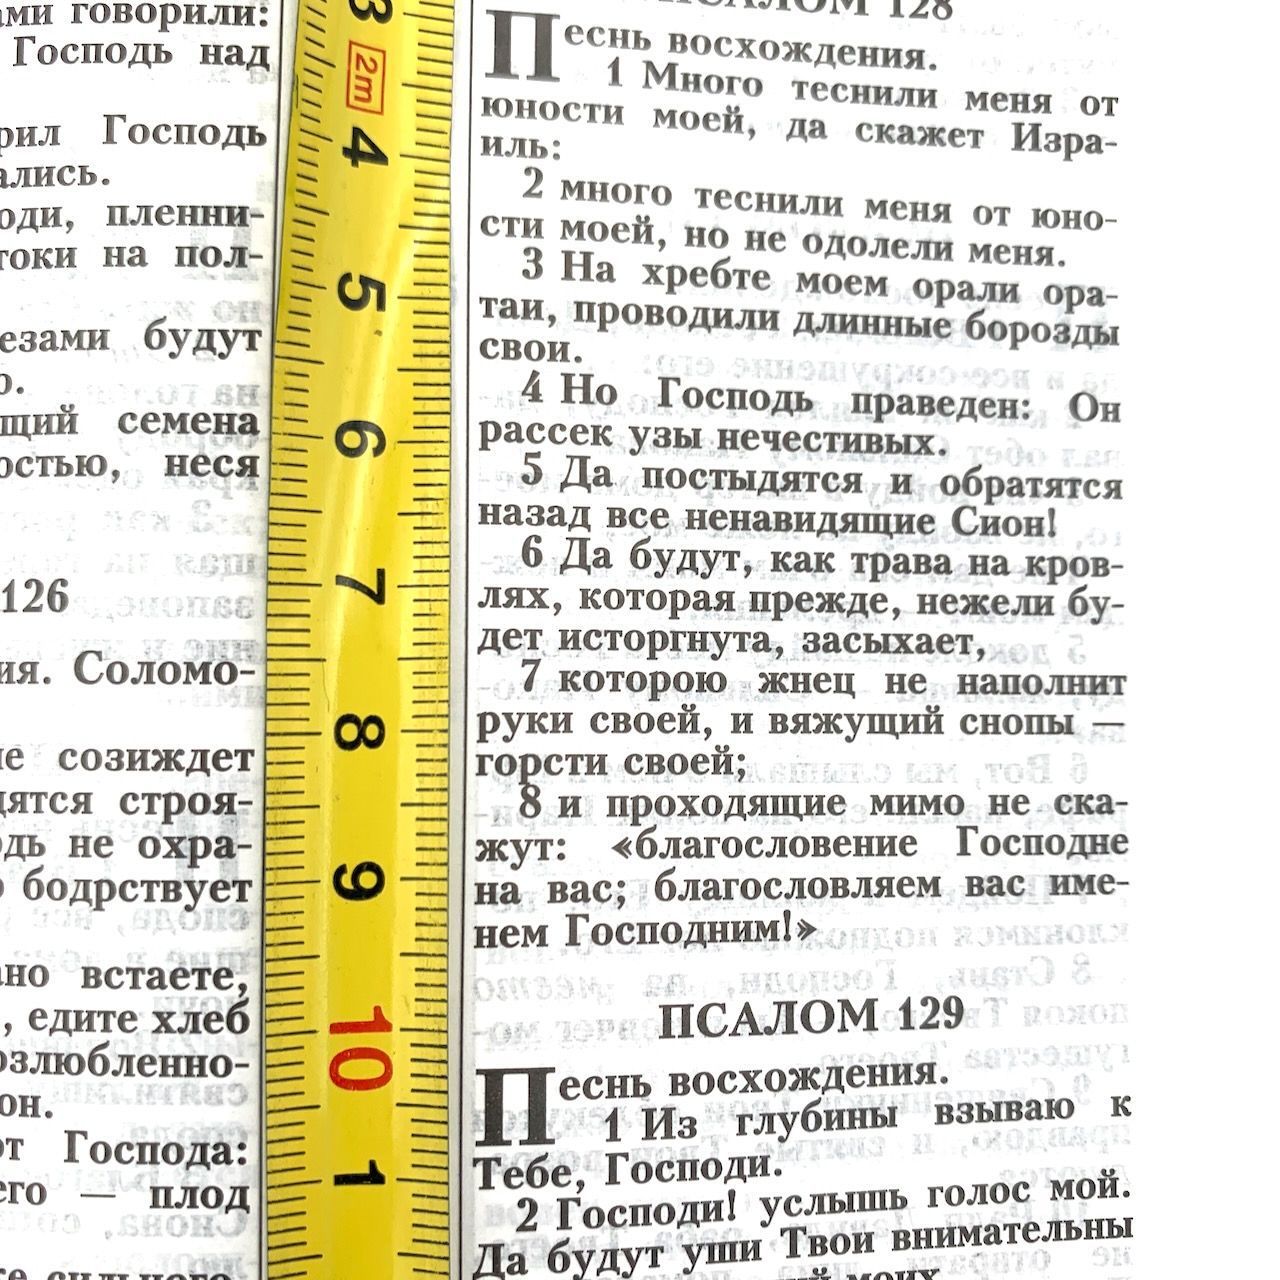 Библия 055zti переплет из искусственной кожи на молнии с индексами, цвет черный, средний формат, 143*220 мм, параллельные места по центру страницы, белые страницы, золотой обрез